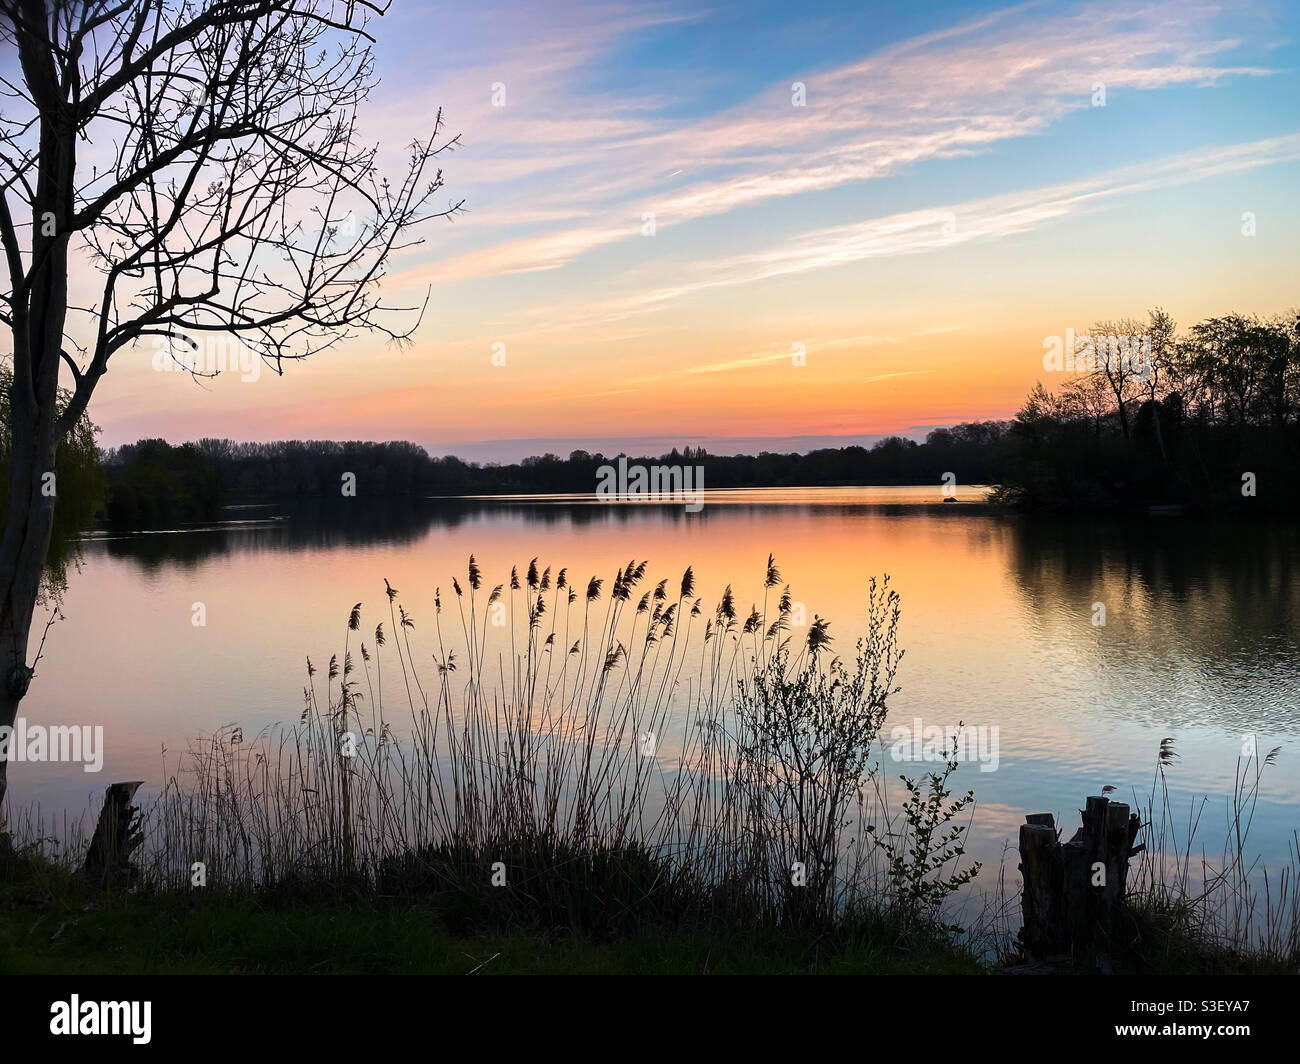 Splendido tramonto o alba sull'acqua. Scena rurale con pampas erba e canne di fronte ad un lago. Paesaggio romantico con silhouette di vegetazione. Foto Stock